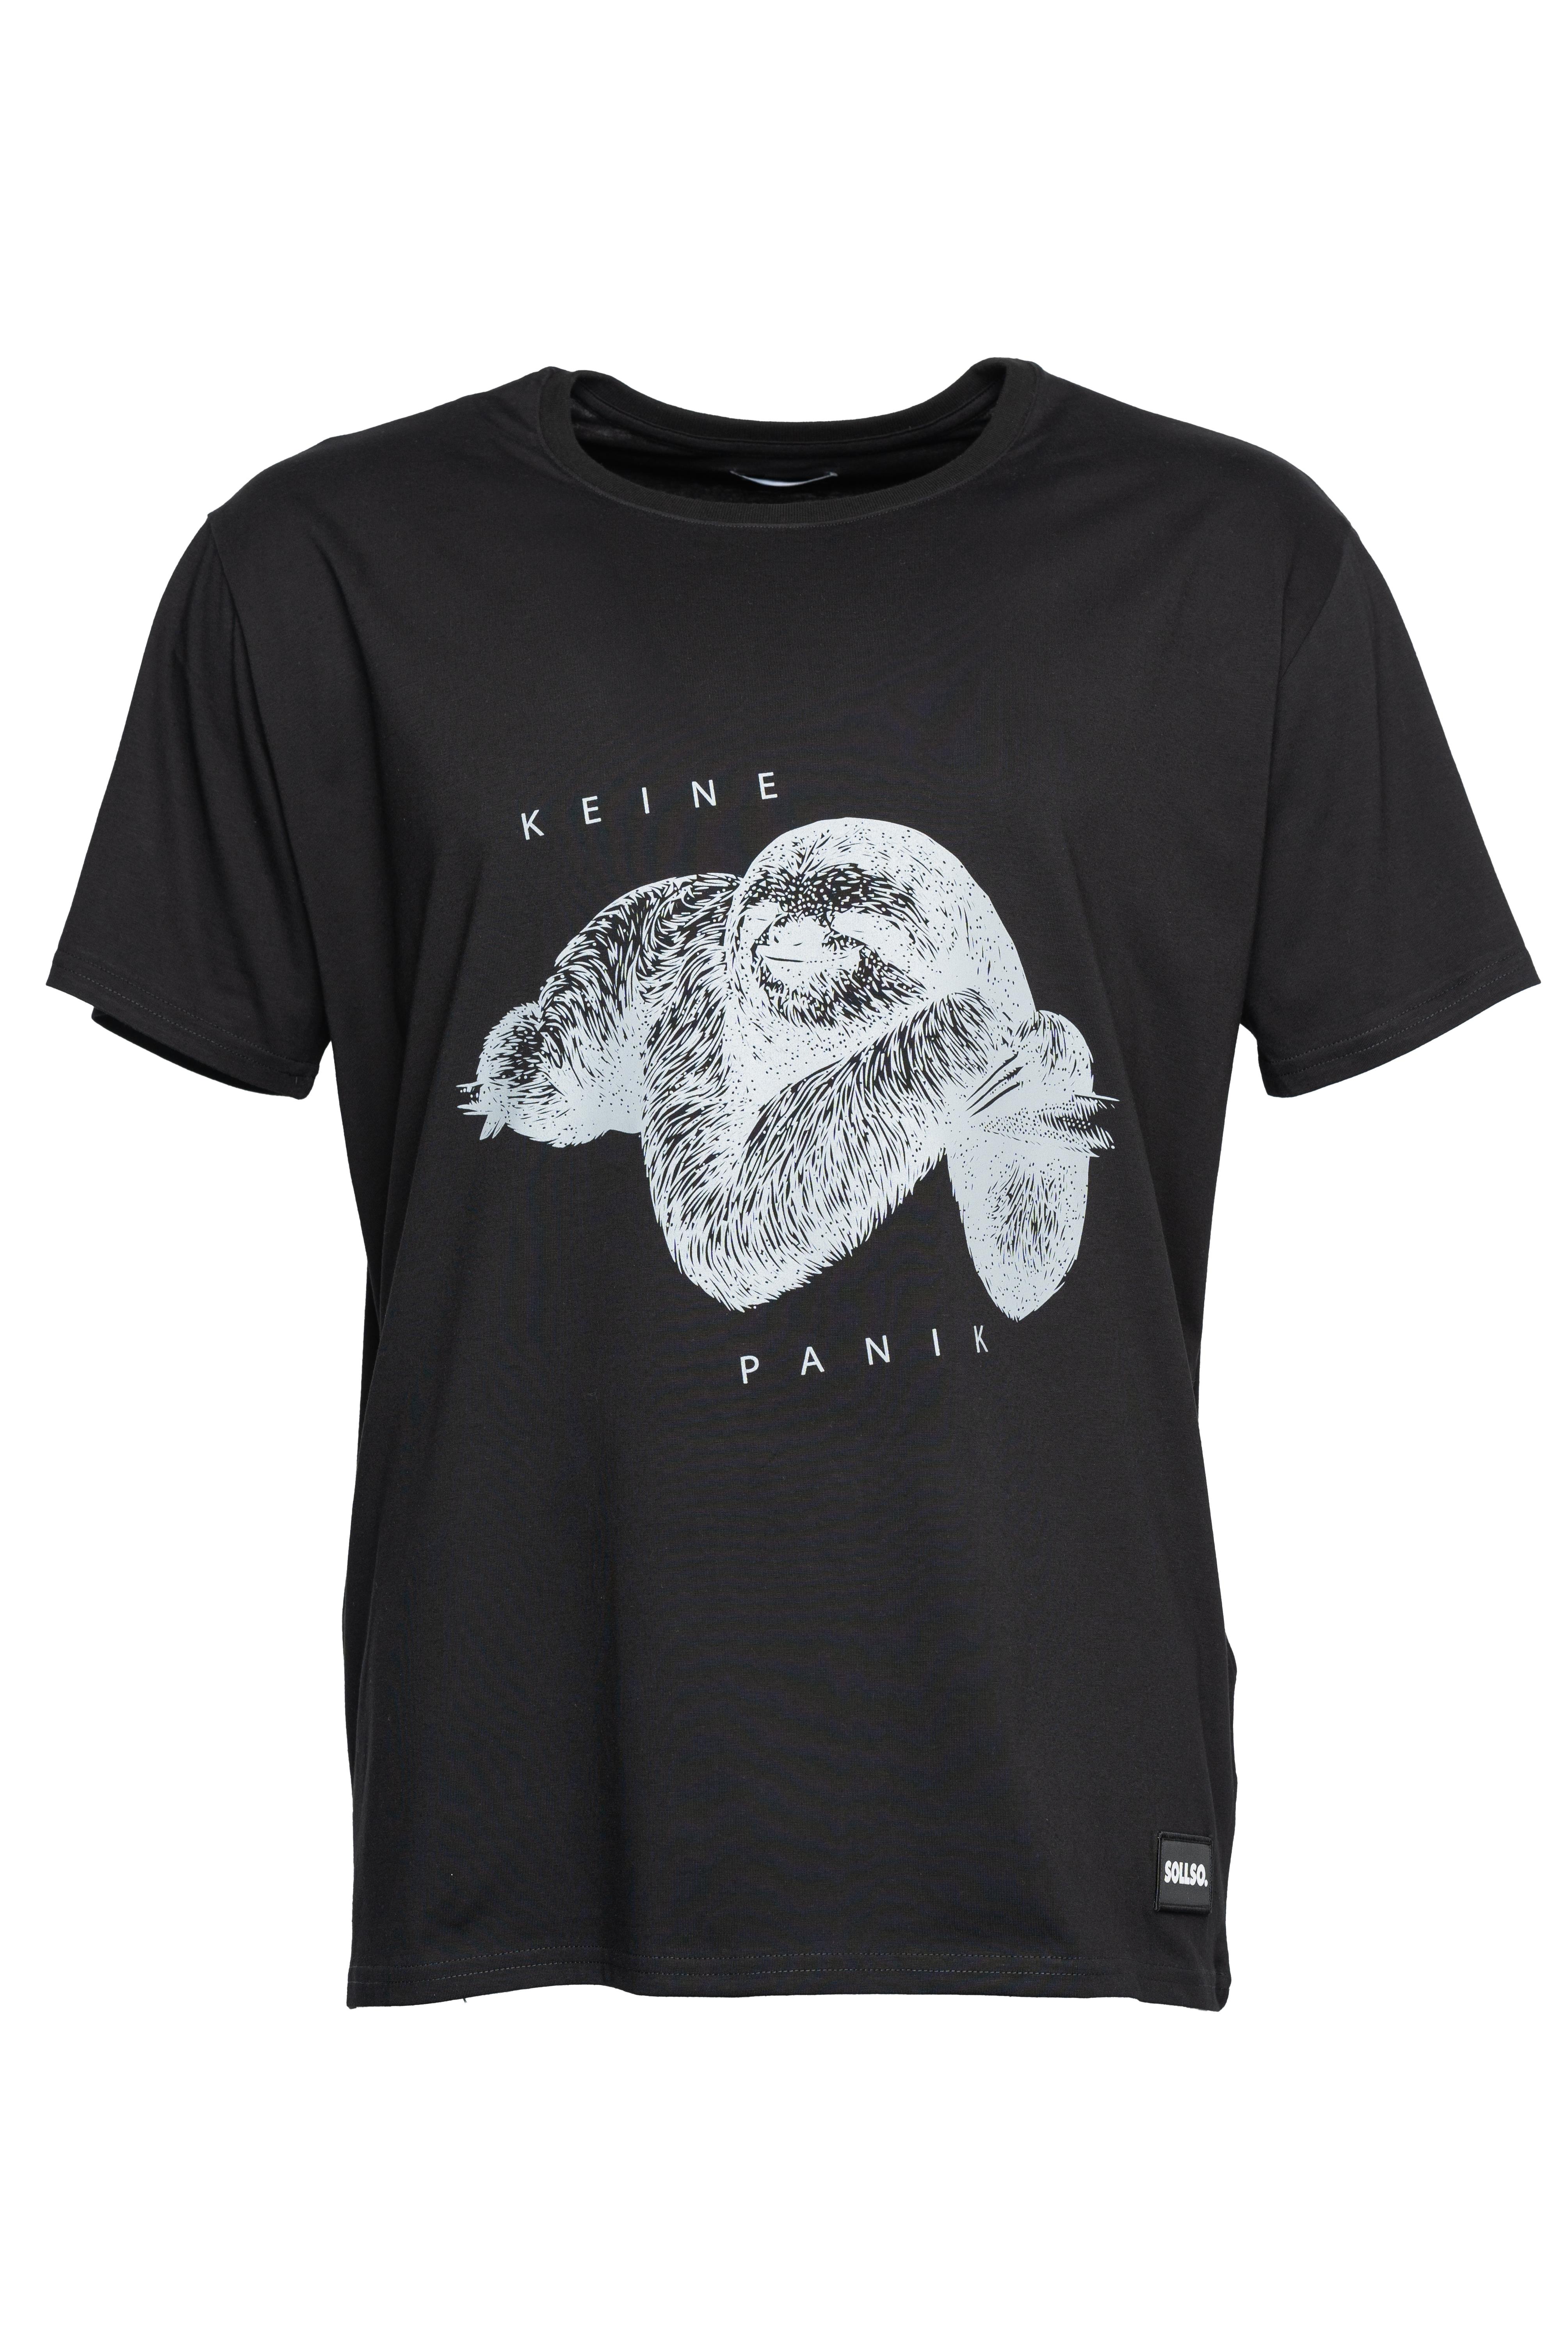 SOLLSO. T-Shirt "Keine Panik Faultier", Farbe Dark Black, Größe XXL